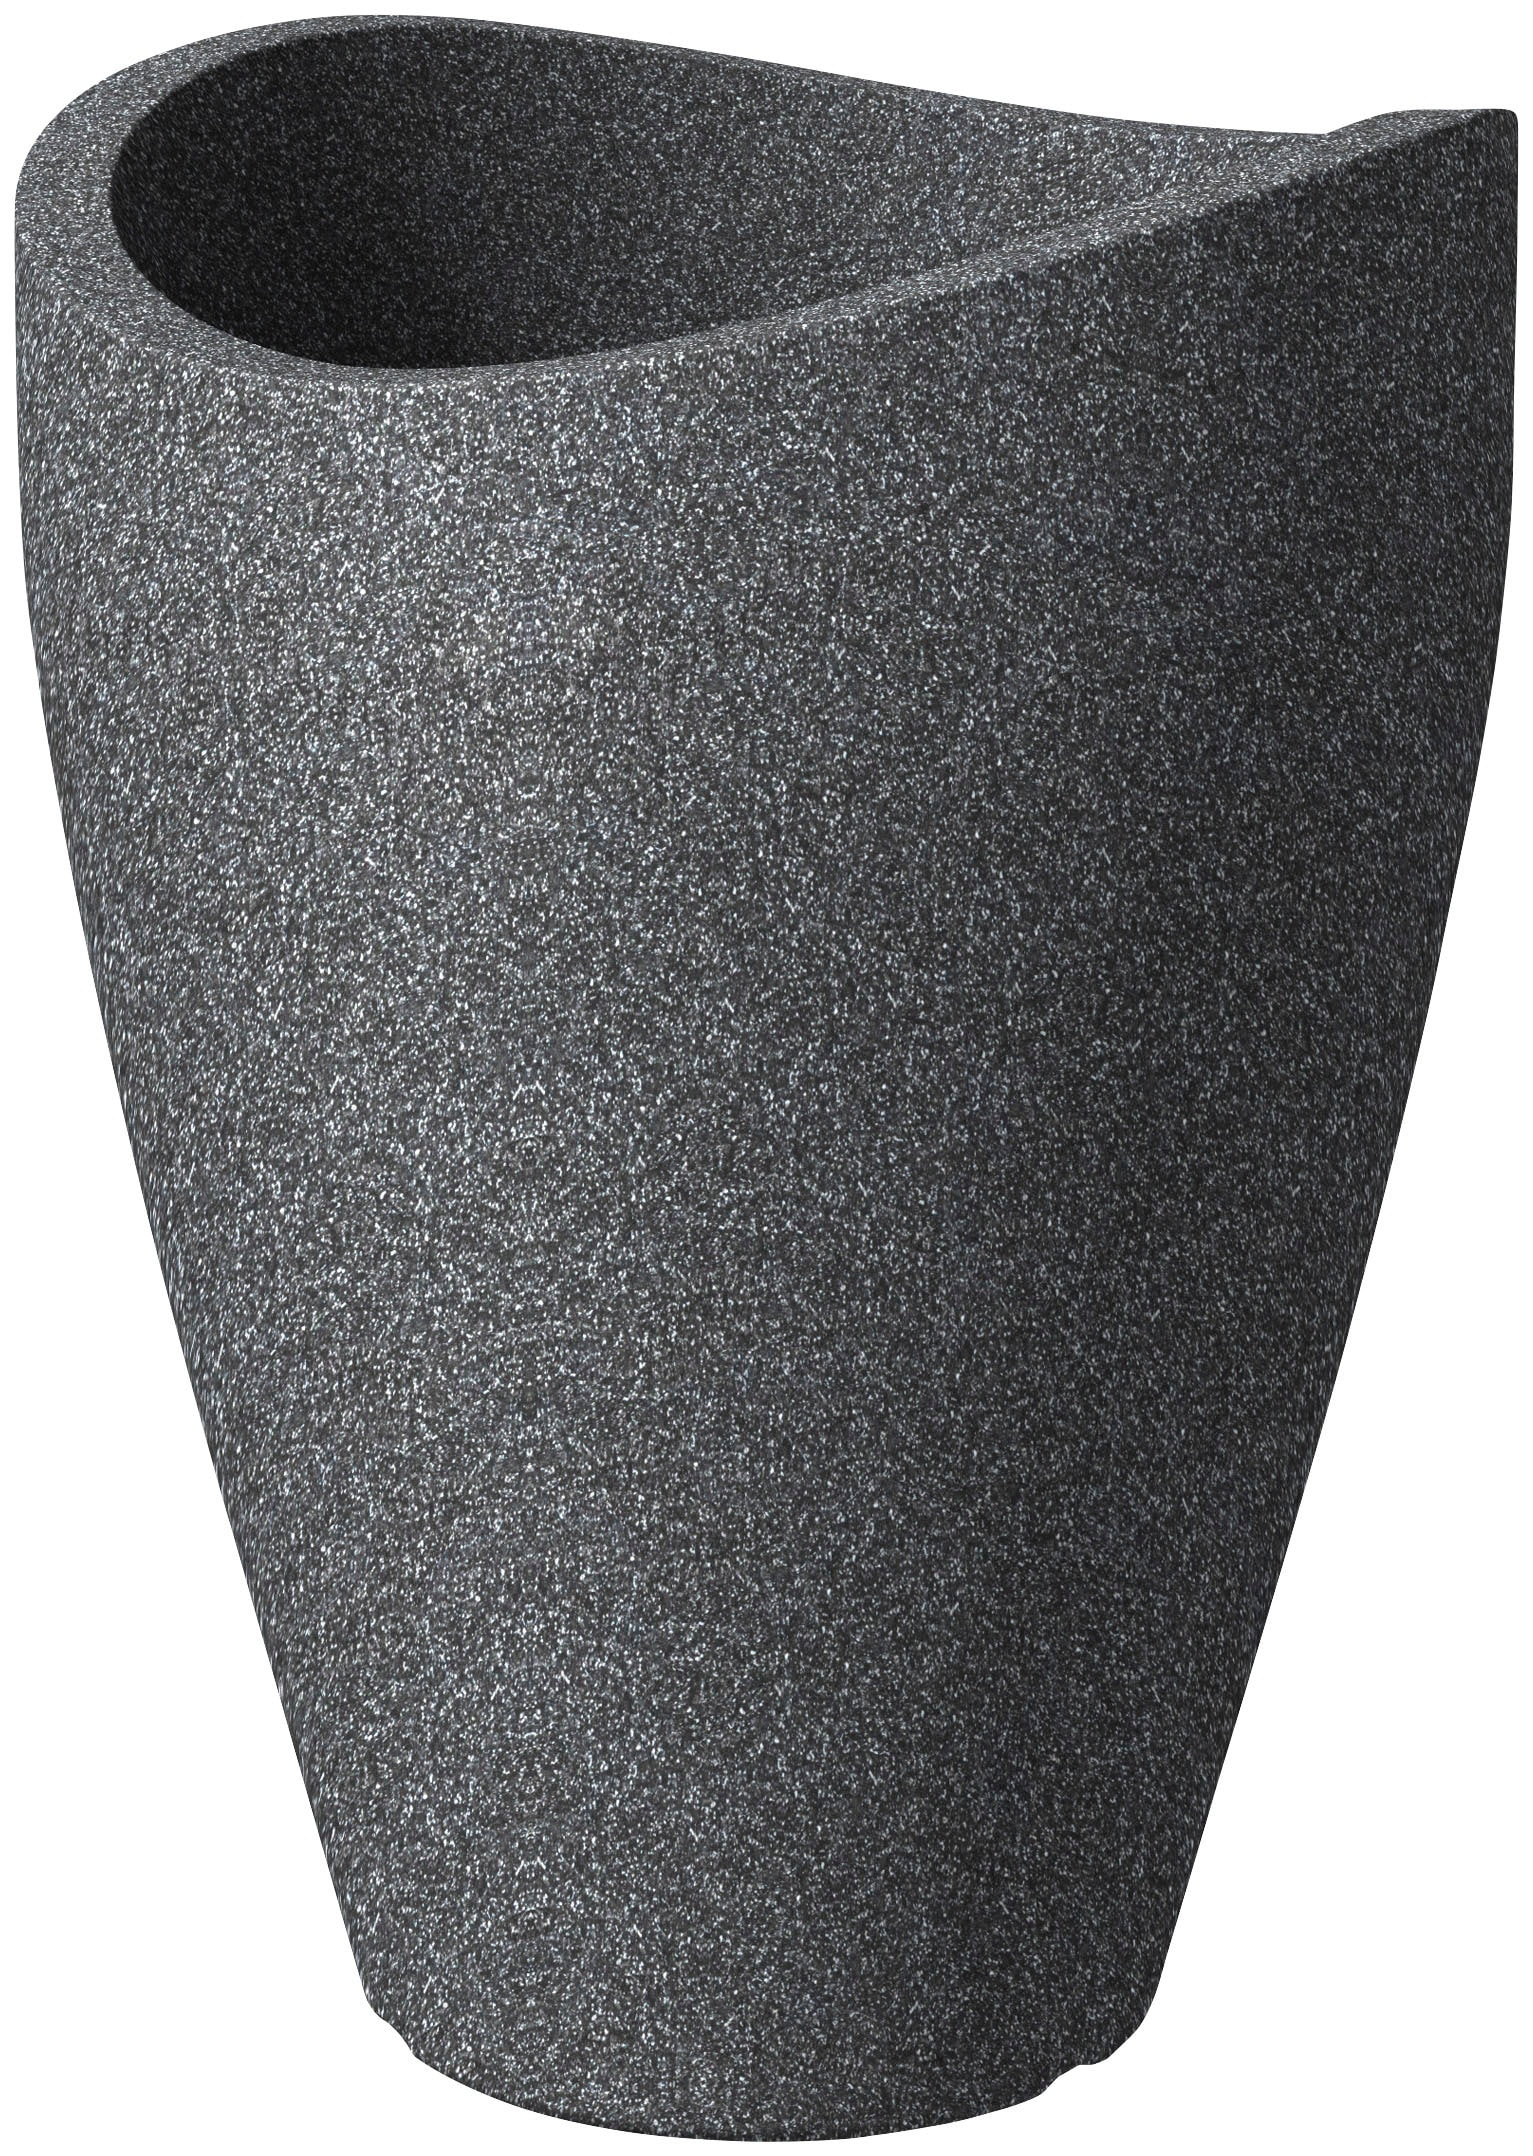 Scheurich Wave Globe High, Hochgefäß aus Kunststoff, Weiss-Granit, 50,5 cm Durchmesser, 67 cm hoch, 33 l Vol.